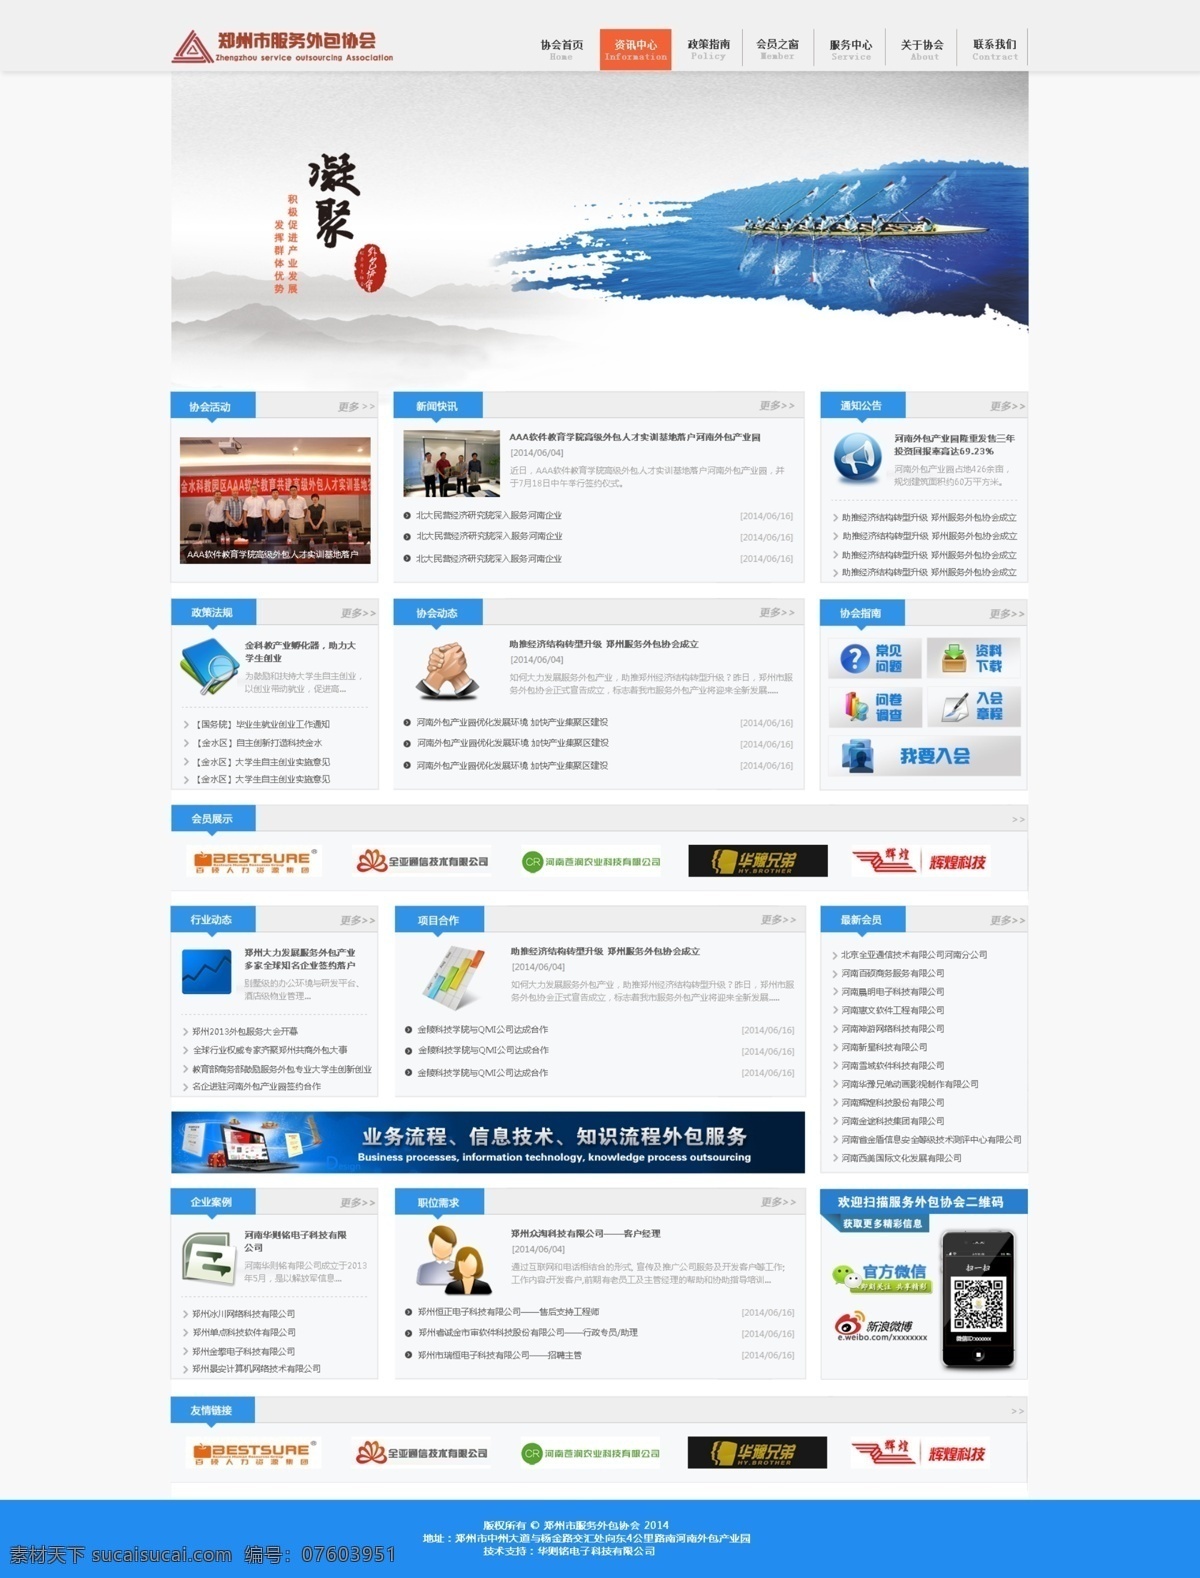 蓝色 网站 蓝色网站 模板 企业 中文模板 首页 web 界面设计 网页素材 其他网页素材